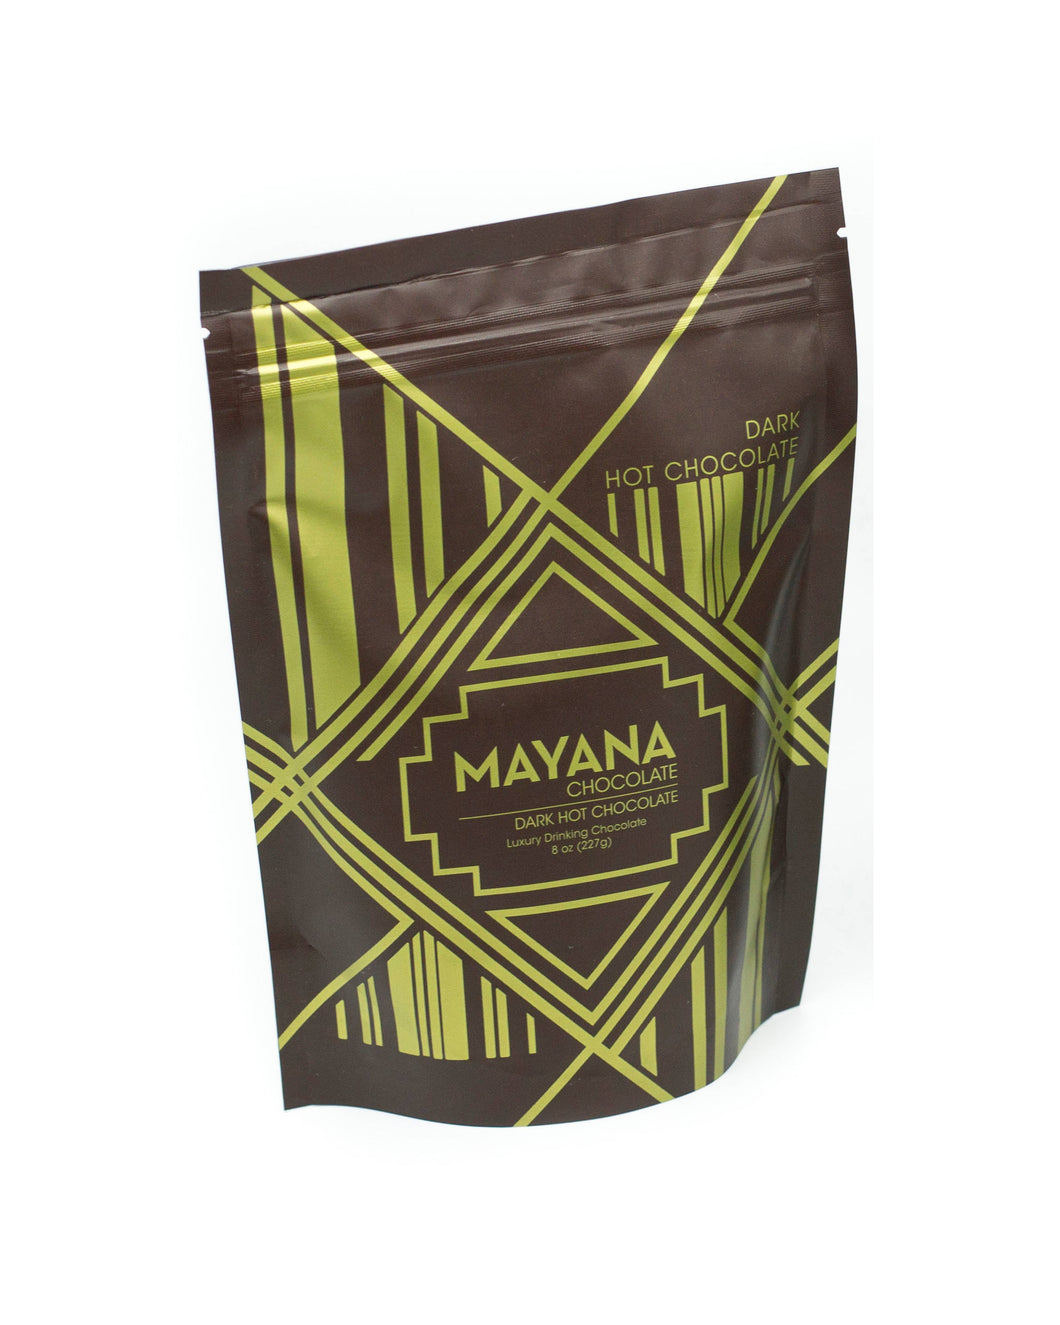 Mayana Chocolate, Dark Hot Chocolate